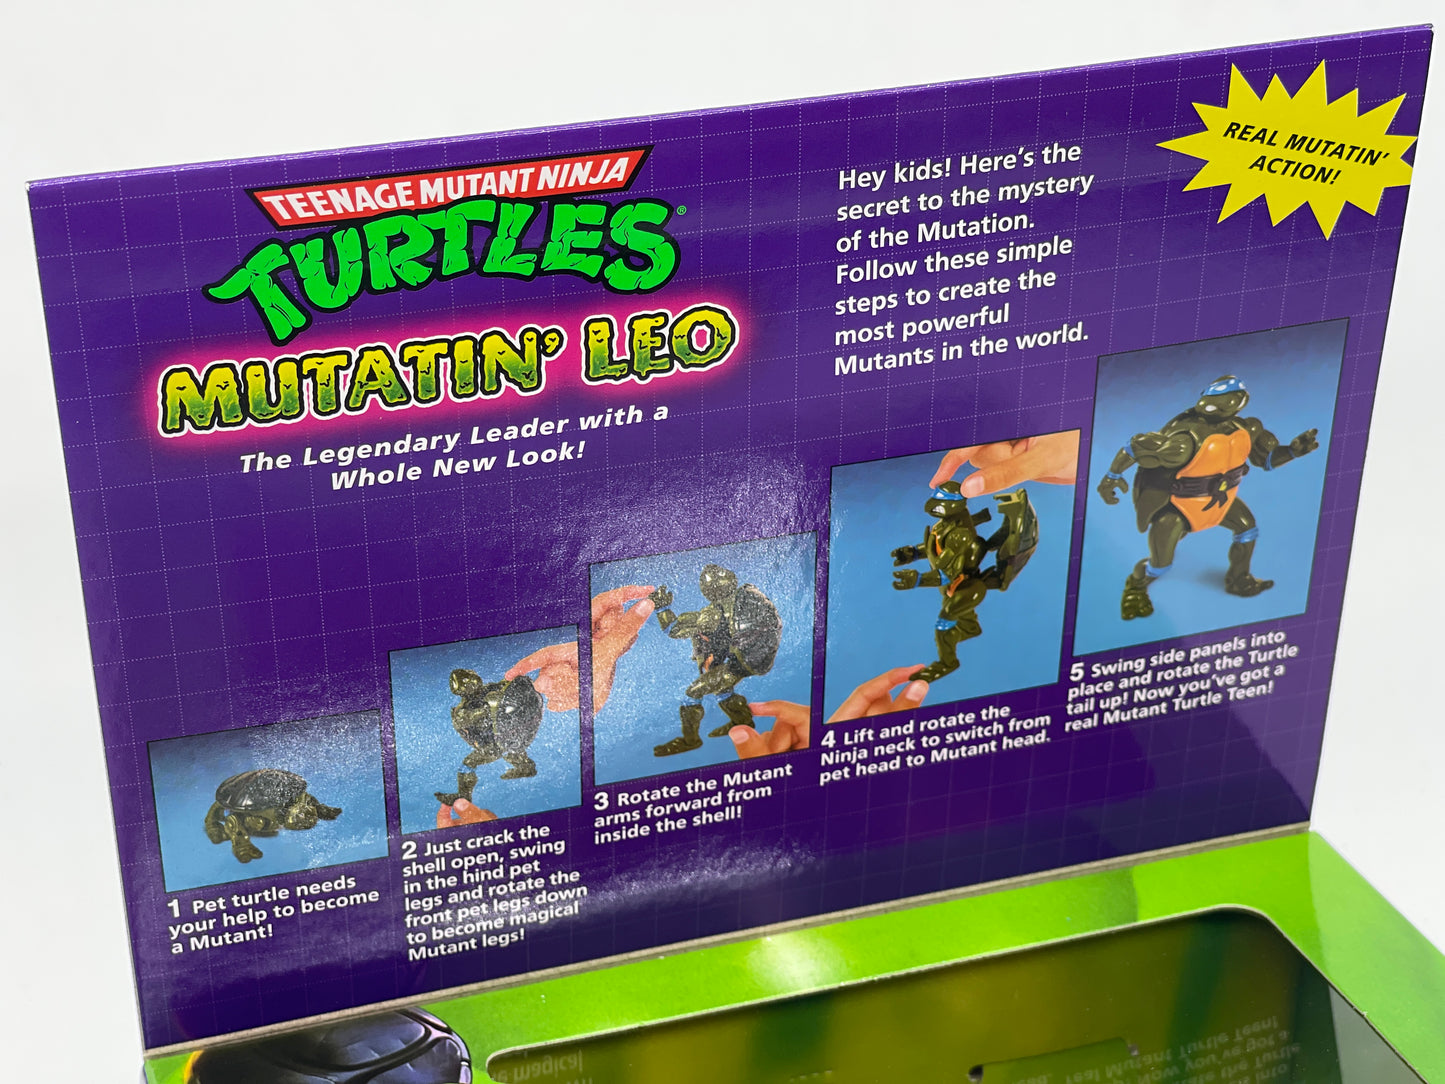 Teenage Mutant Ninja Turtles "Mutatin' Leo" The Making of a Ninja Target Exclusive